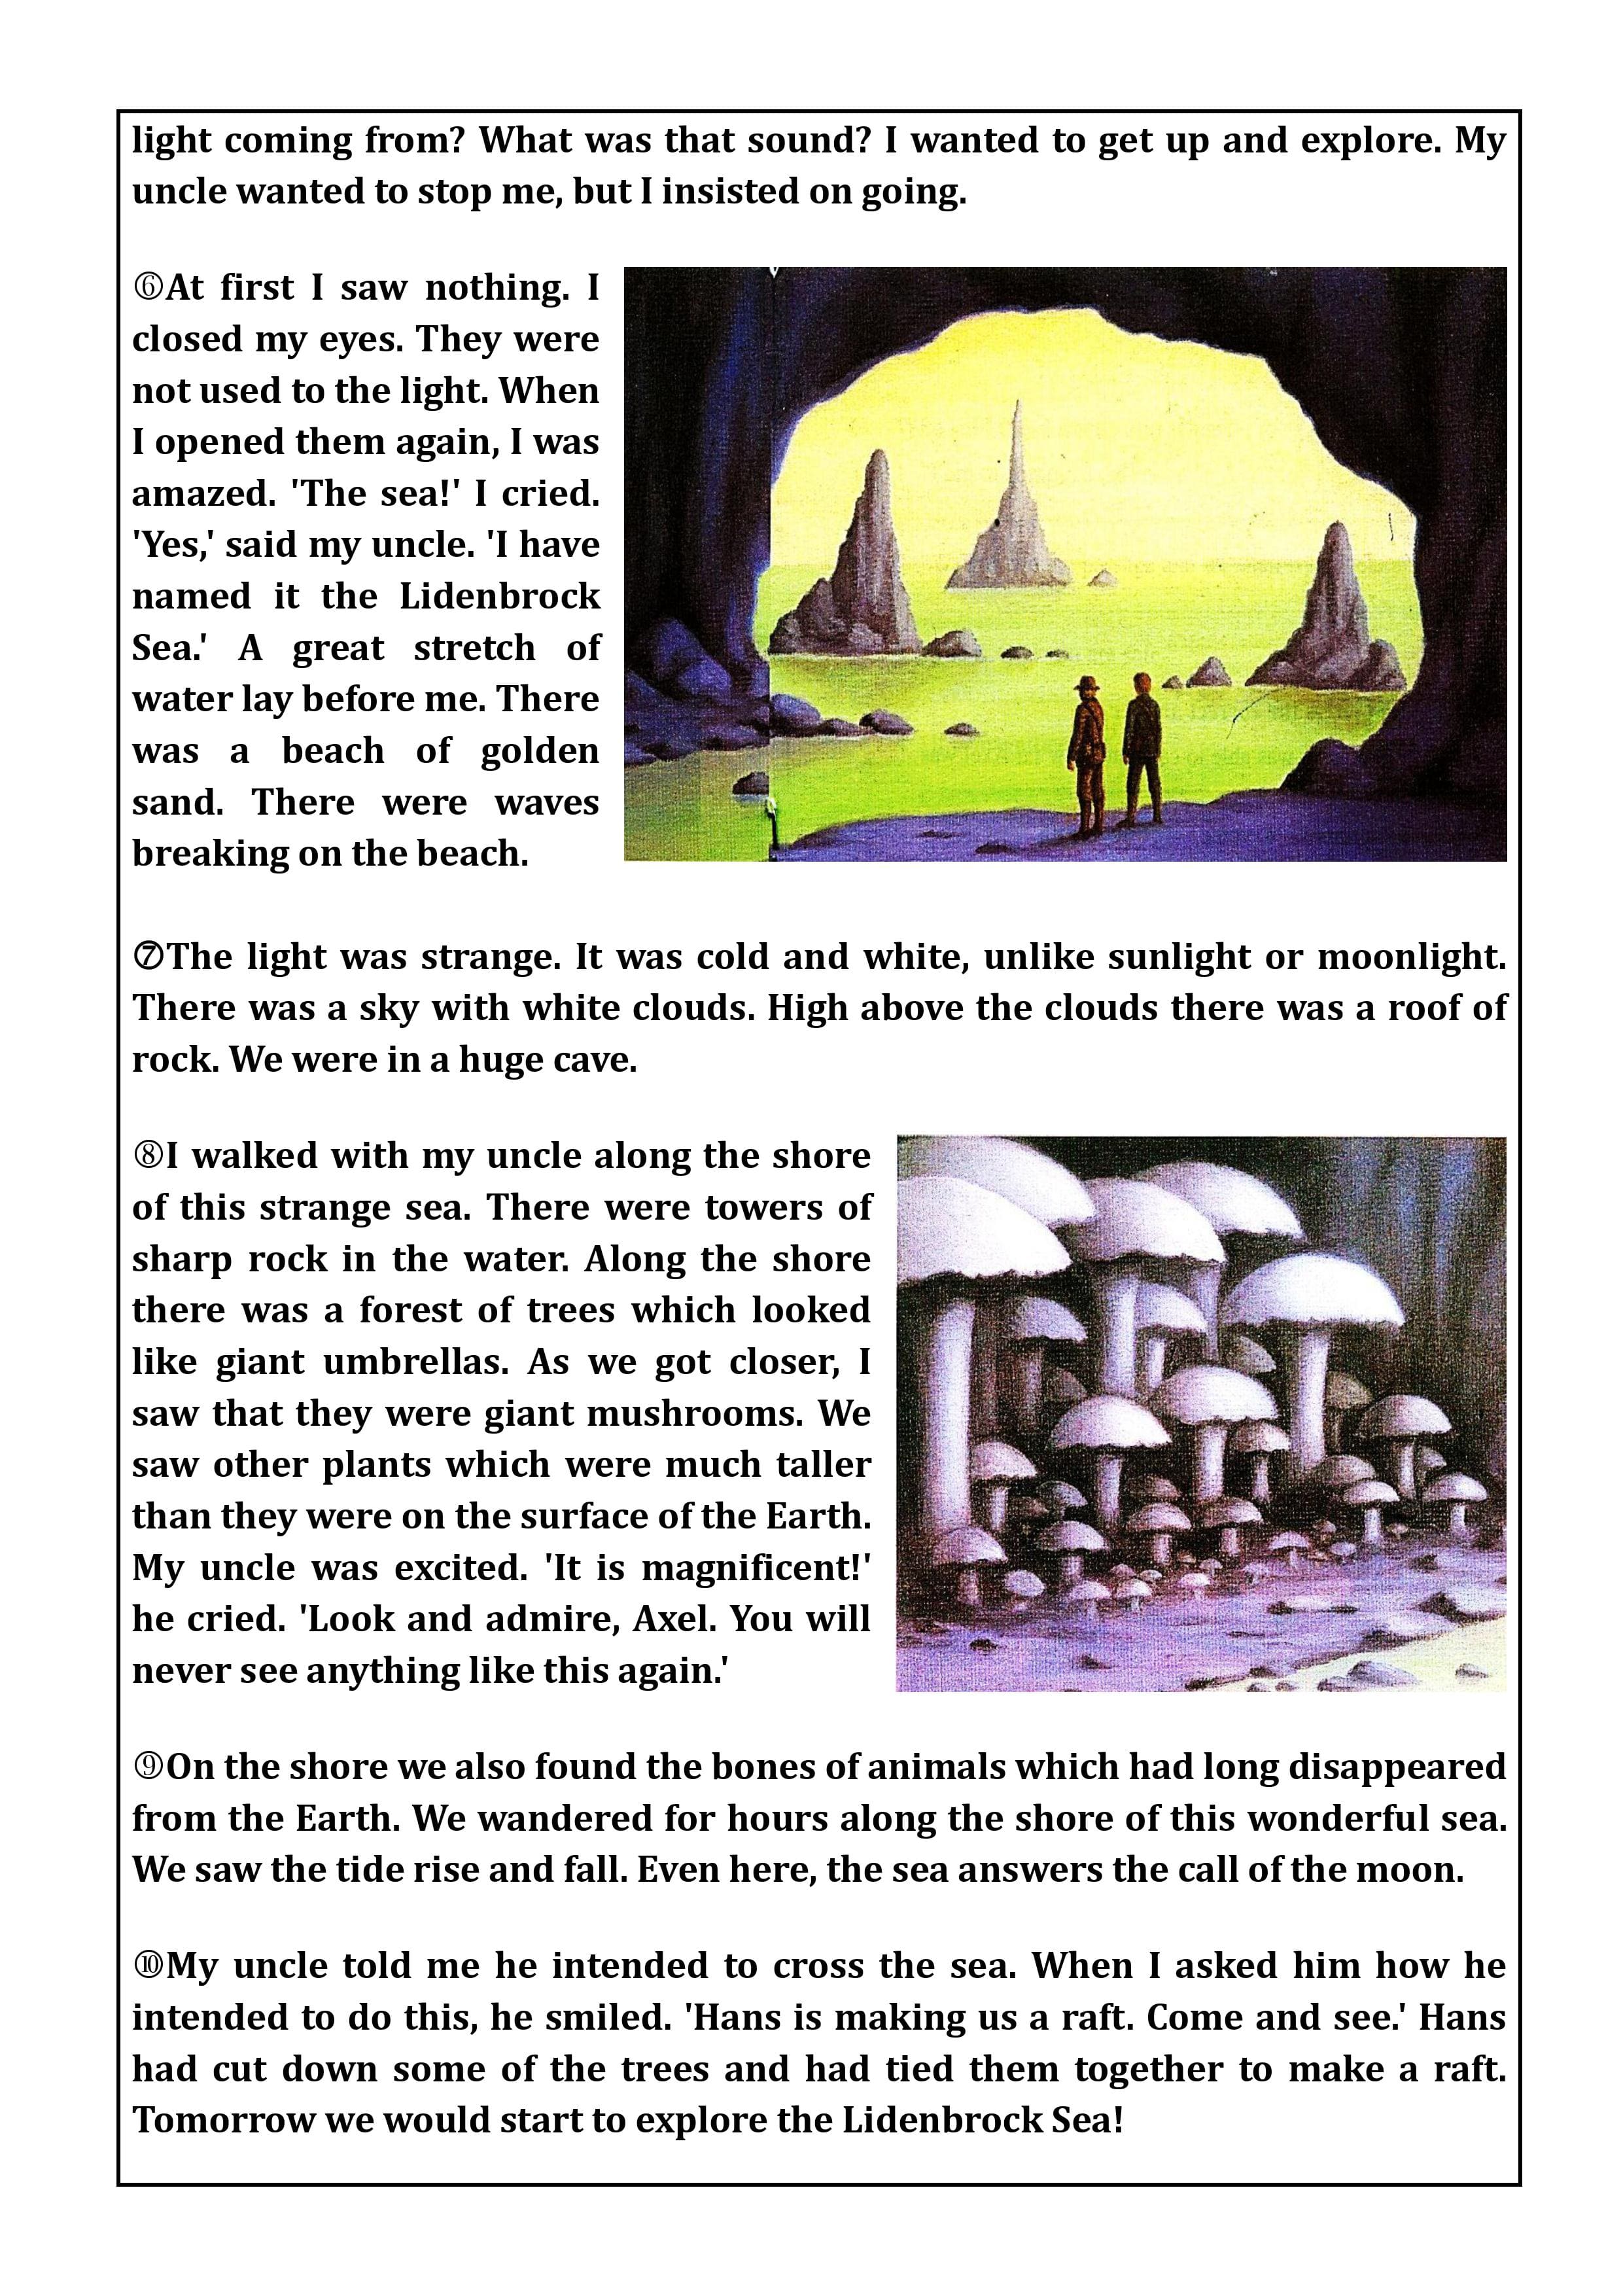 نص الكتاب المدسى فى قصة رحلة الى مركز الارض مصورة